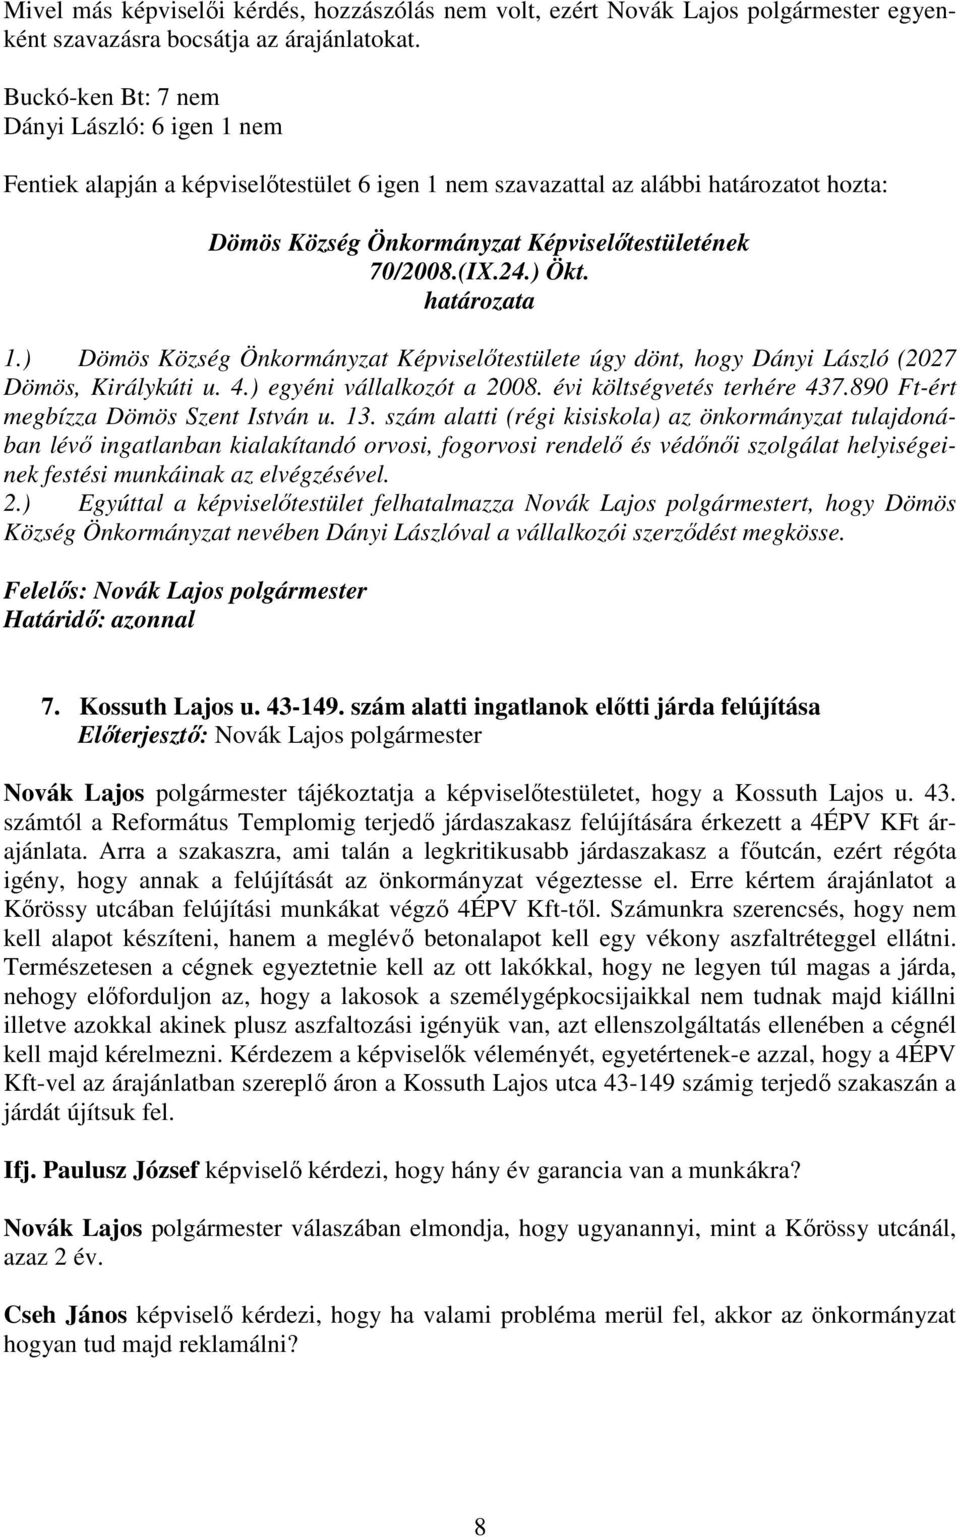 ) Dömös Község Önkormányzat Képviselıtestülete úgy dönt, hogy Dányi László (2027 Dömös, Királykúti u. 4.) egyéni vállalkozót a 2008. évi költségvetés terhére 437.